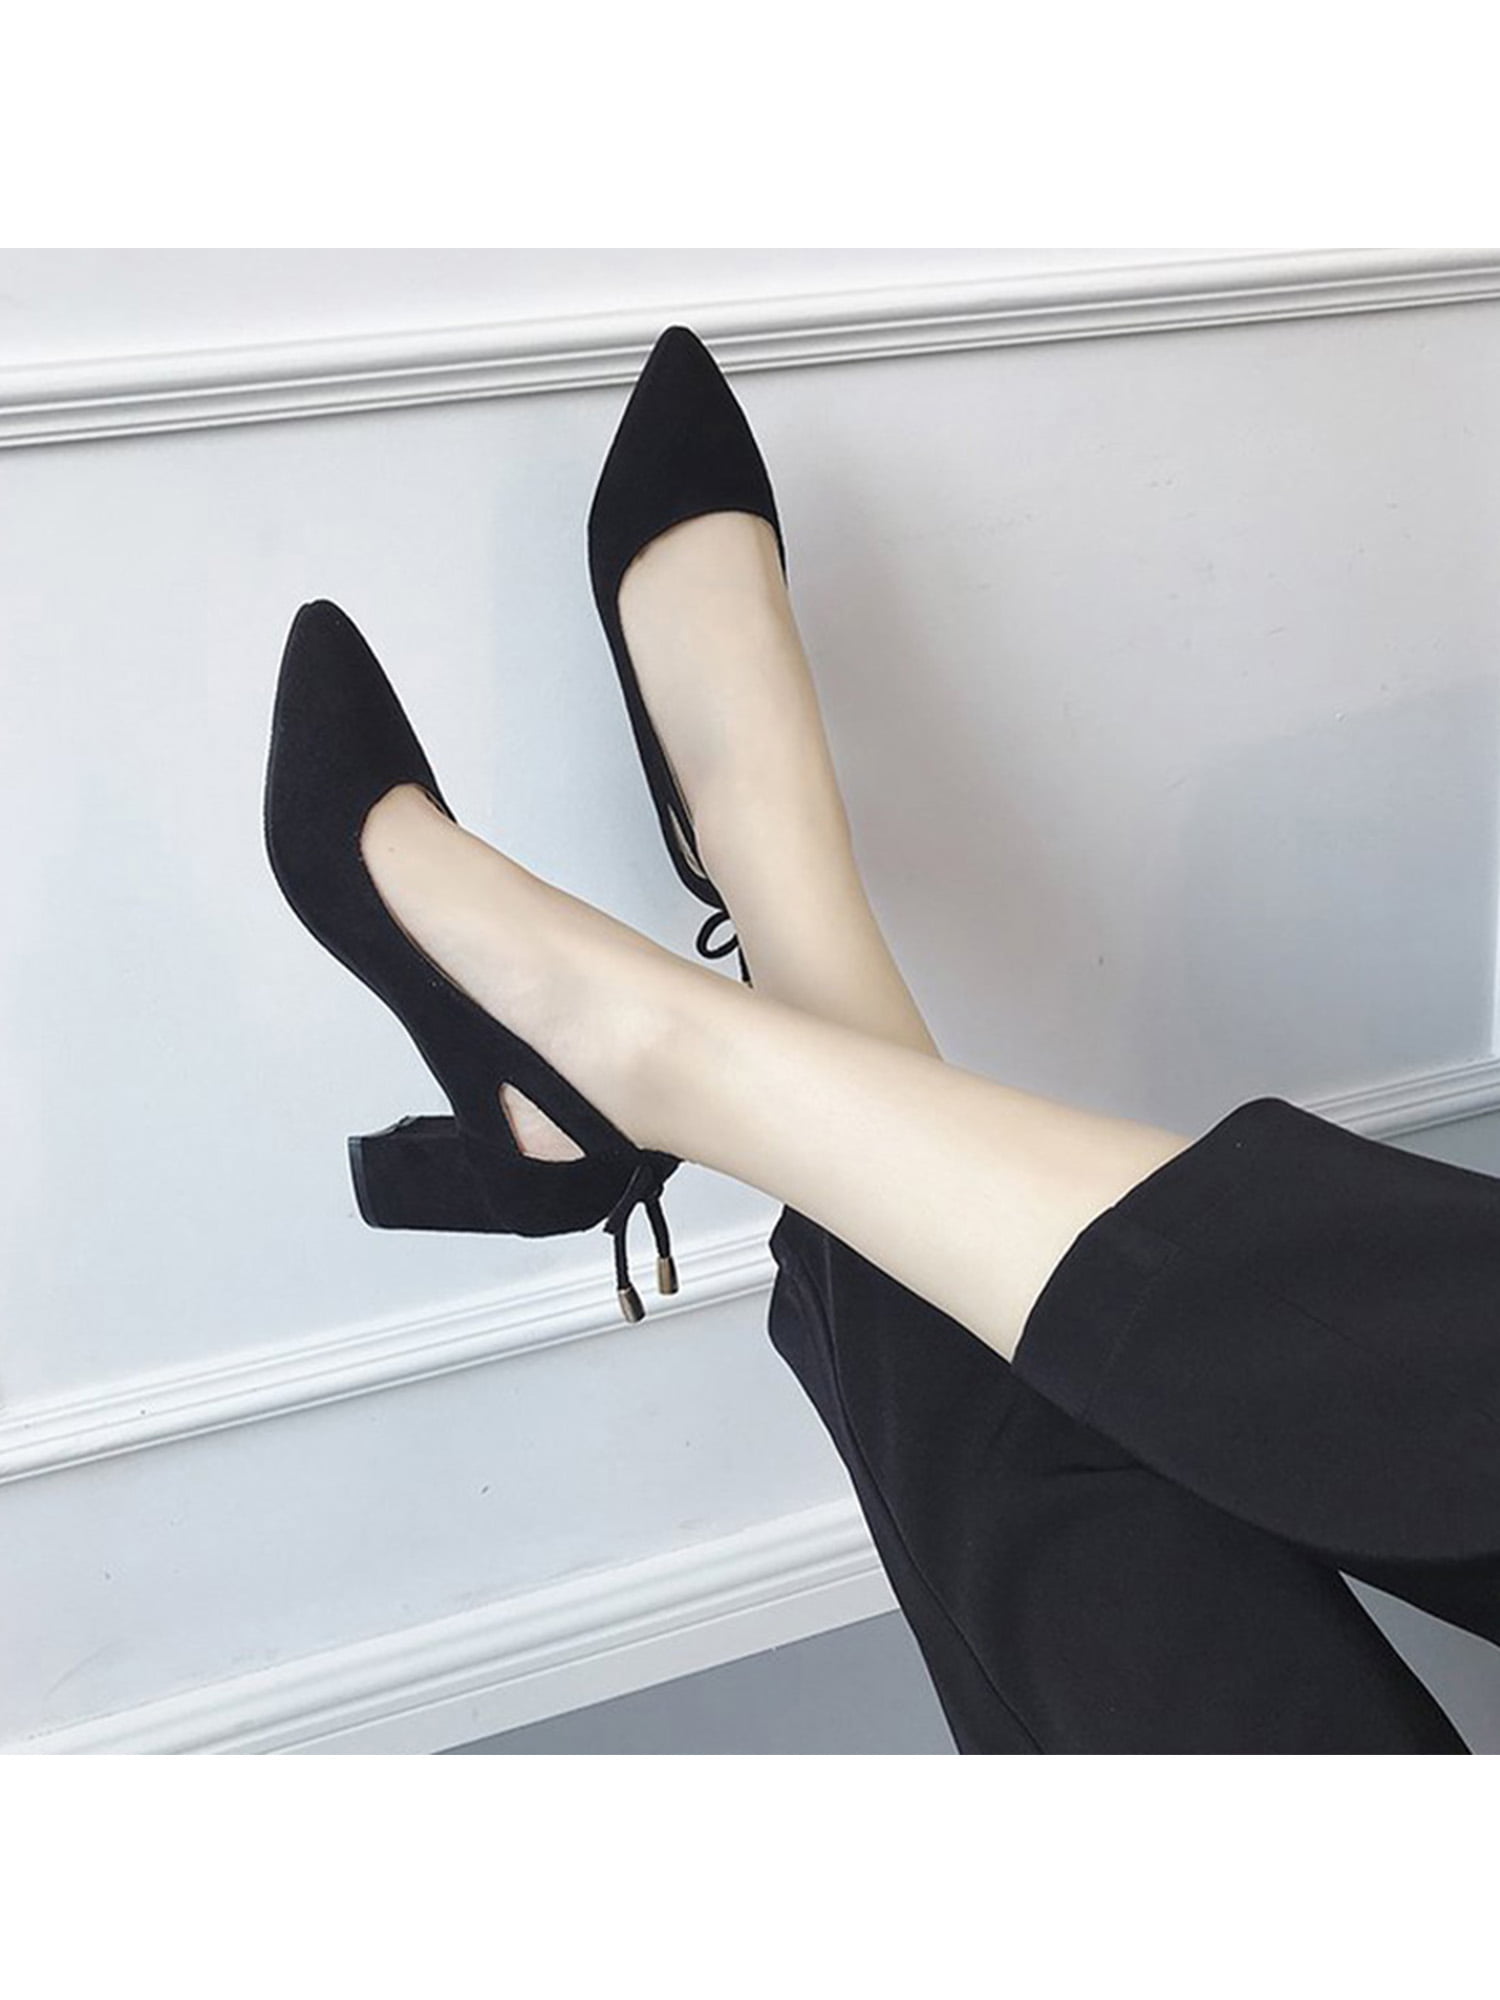 Black Suede Oxford High Heels Booties - ShopperBoard